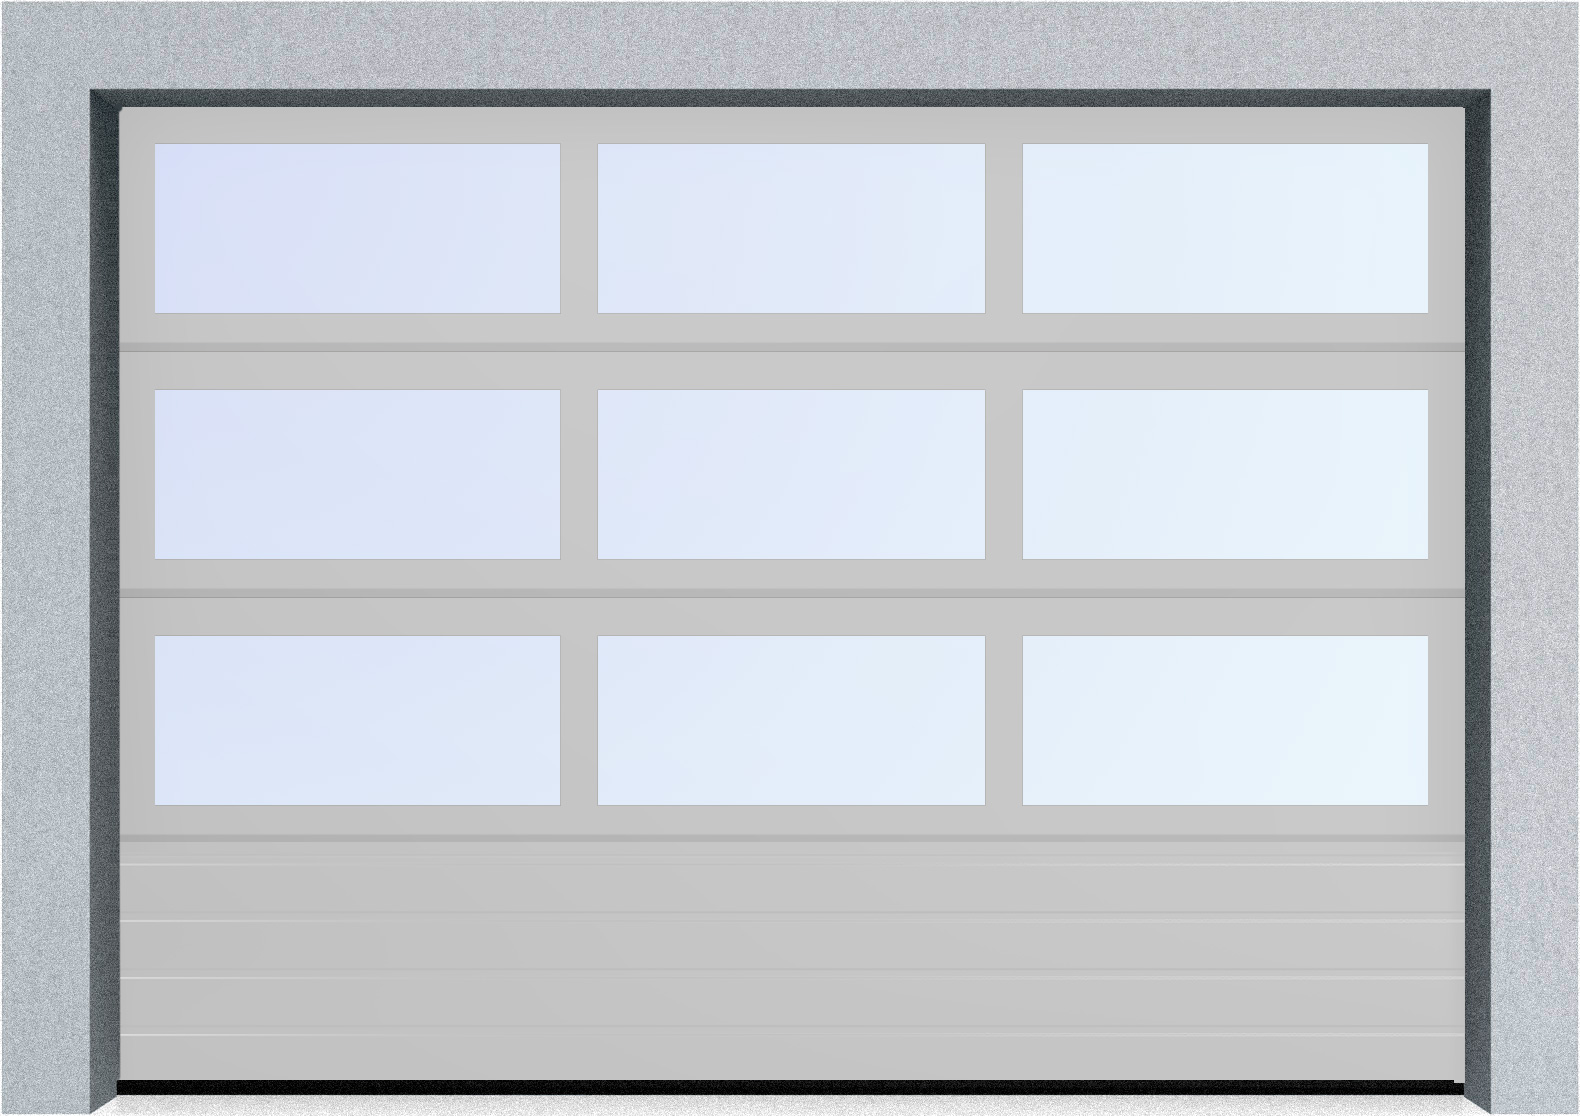  Секционные панорамные ворота серии AluTrend с комбинированным типом полотна (АЛПС) 3375х2125 нижняя панель S-гофр, Микроволна стандартные цвета, фото 16 